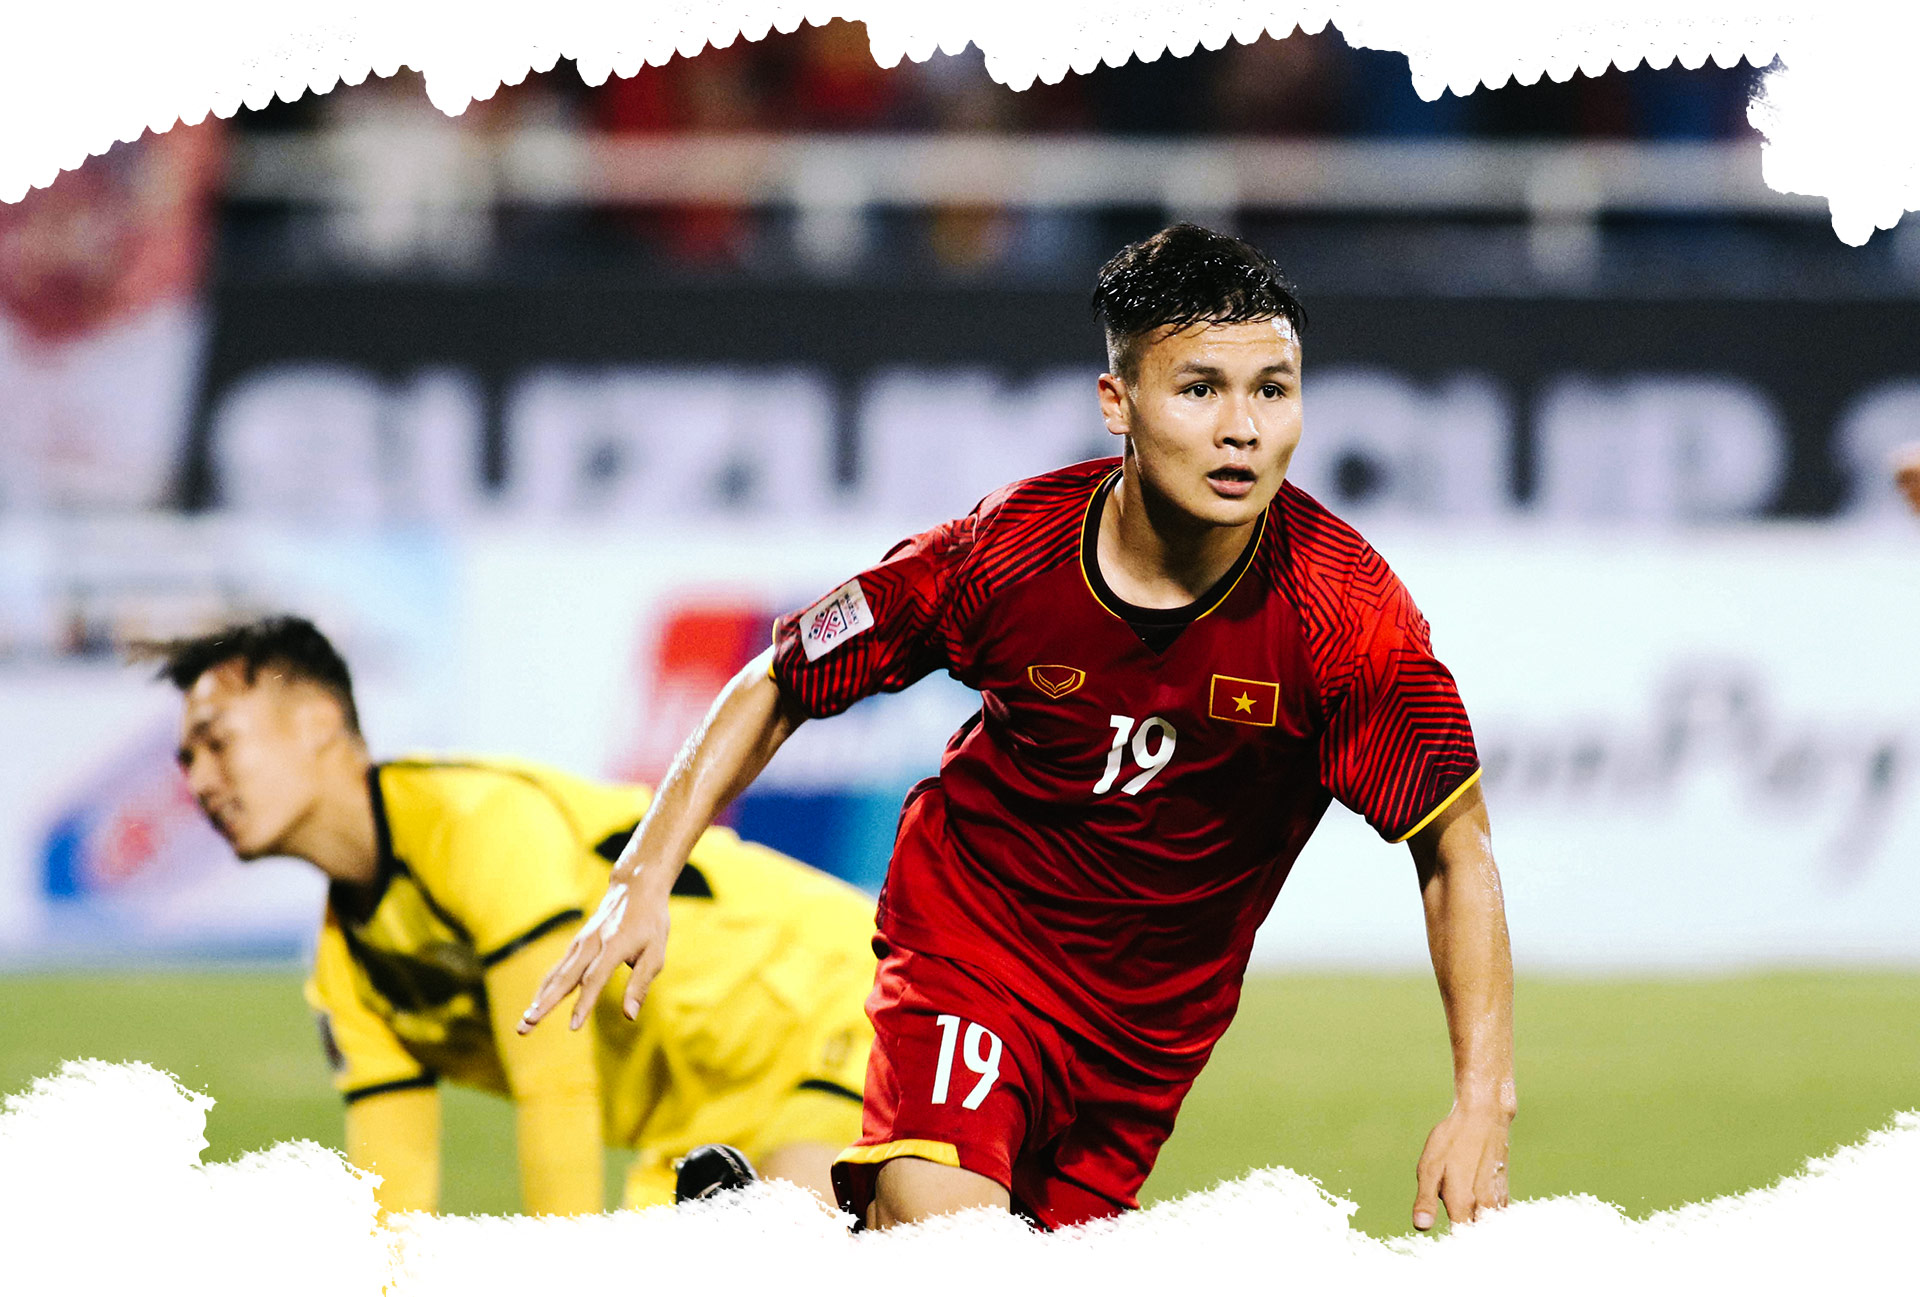 Quang Hải – Ngôi sao trẻ & 2 khoảnh khắc kỳ diệu bóng đá Việt Nam - 12